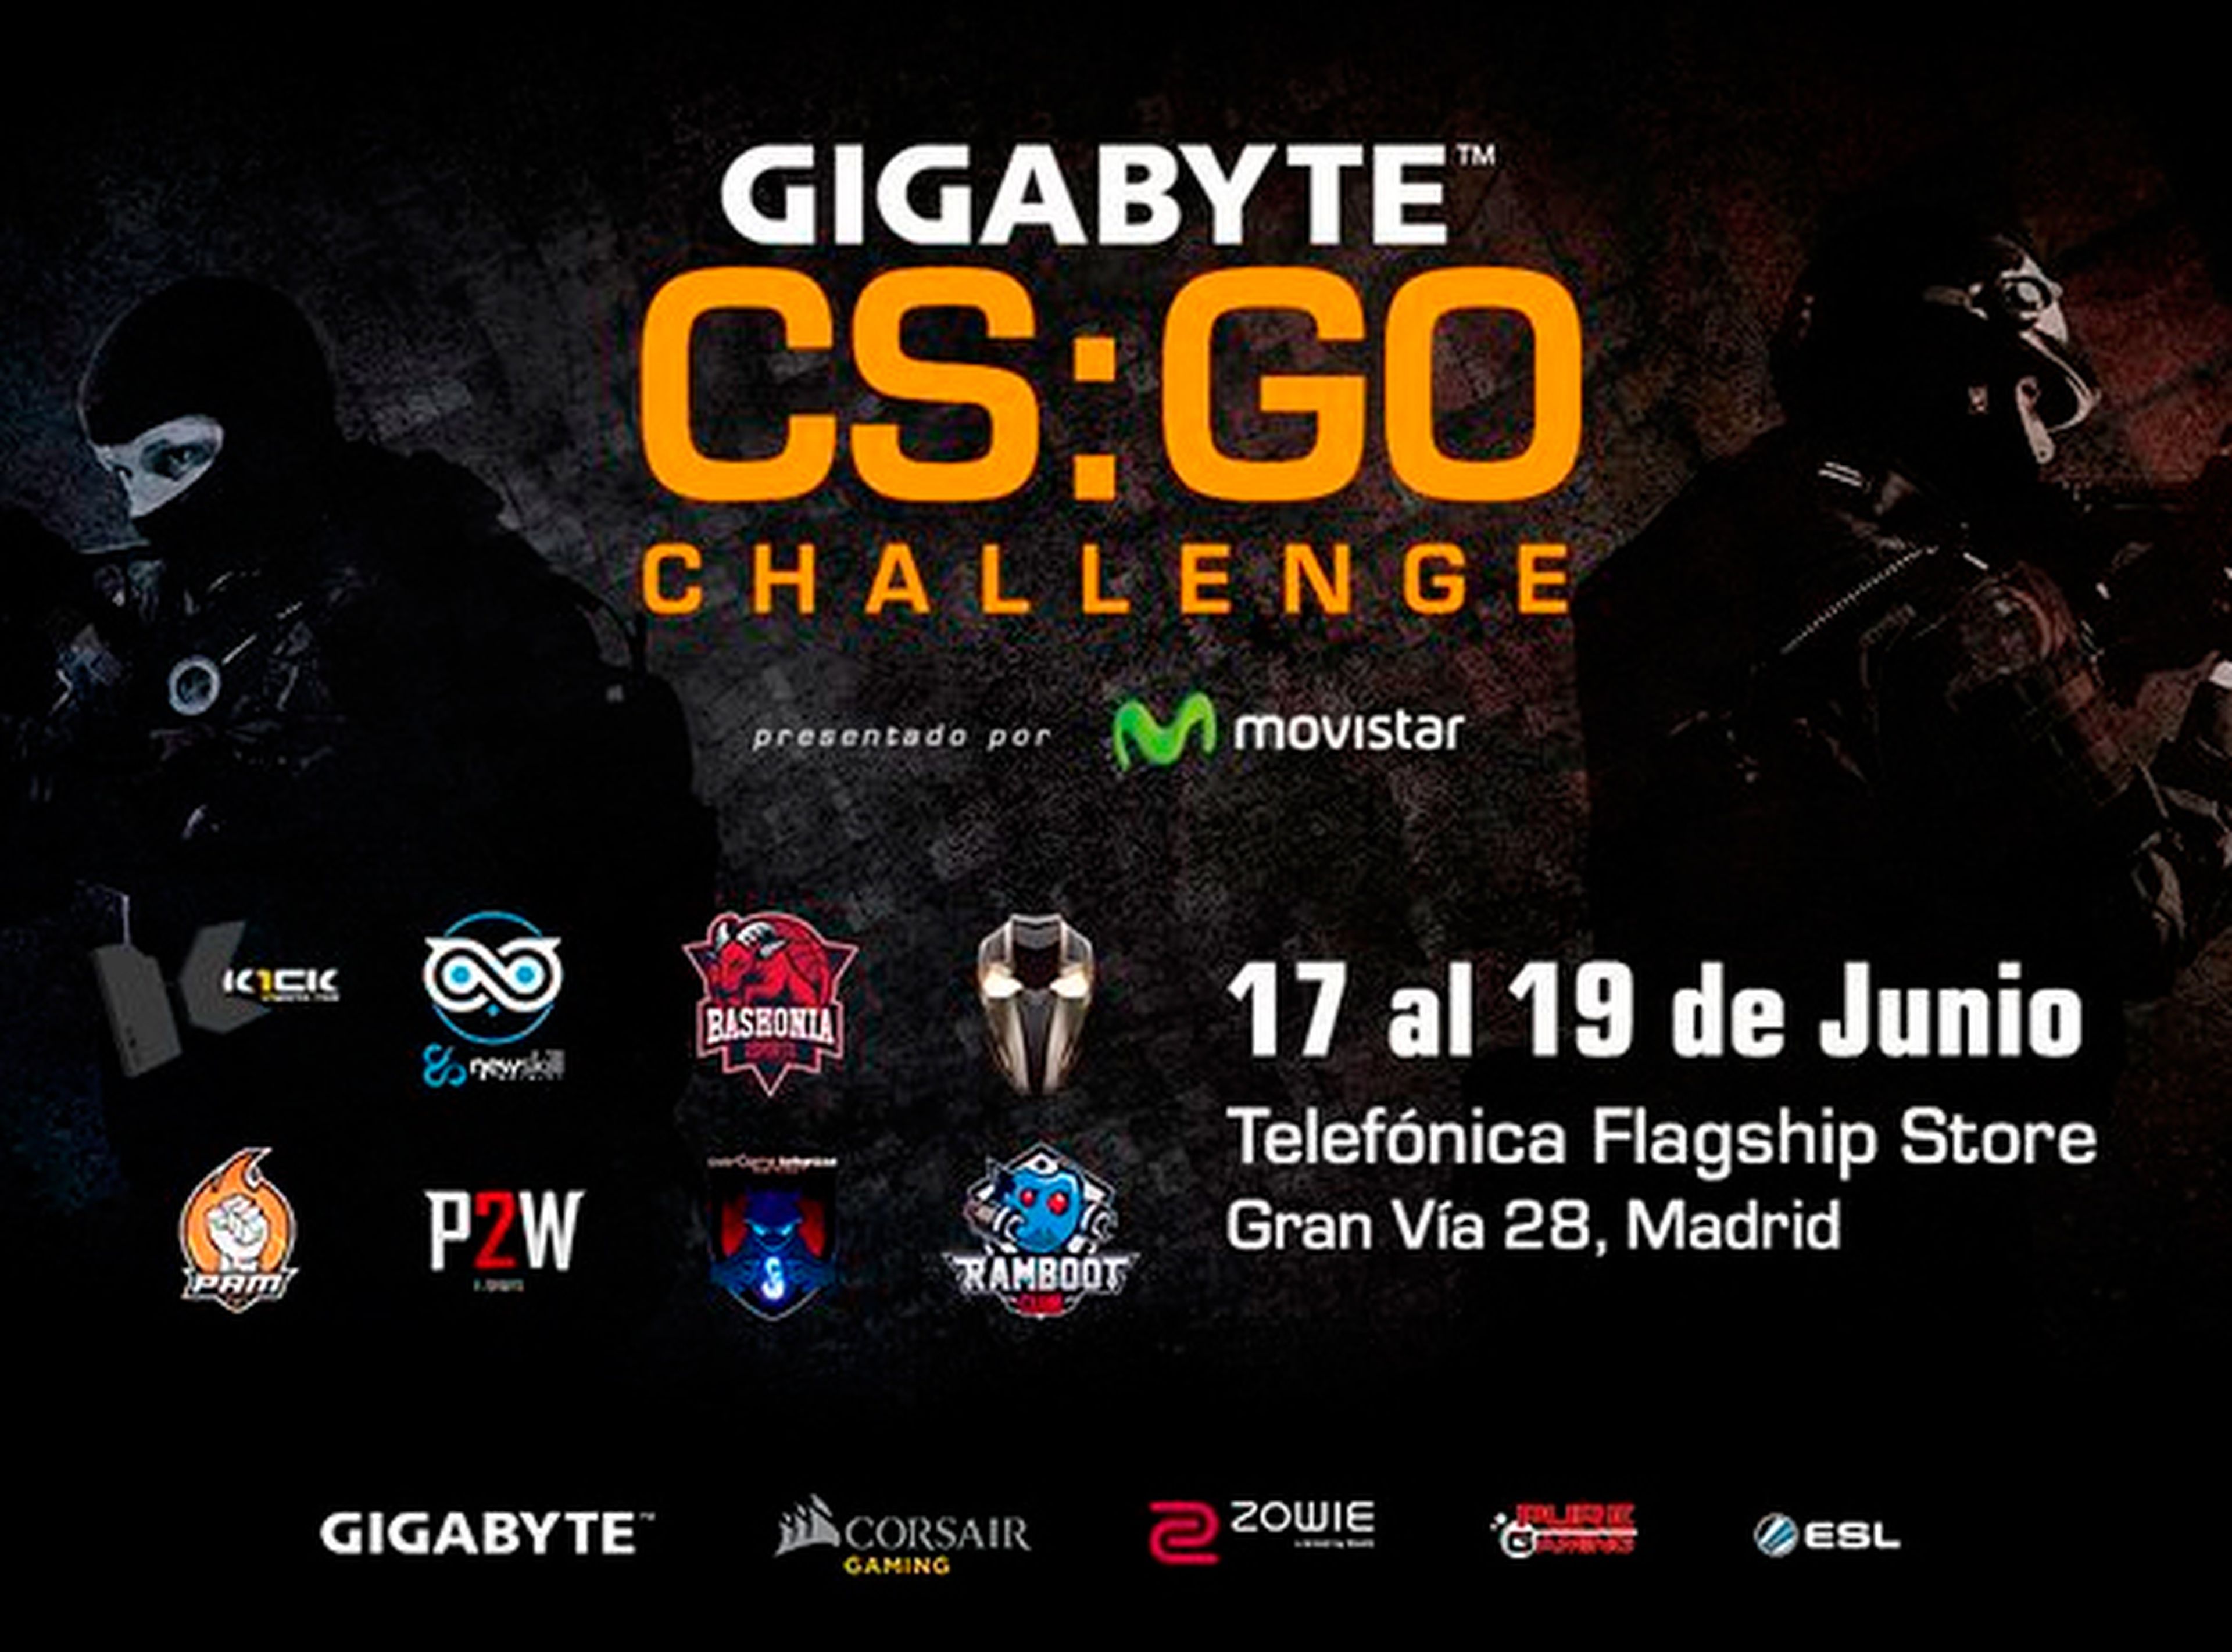 Gigabyte CSGO Challenge